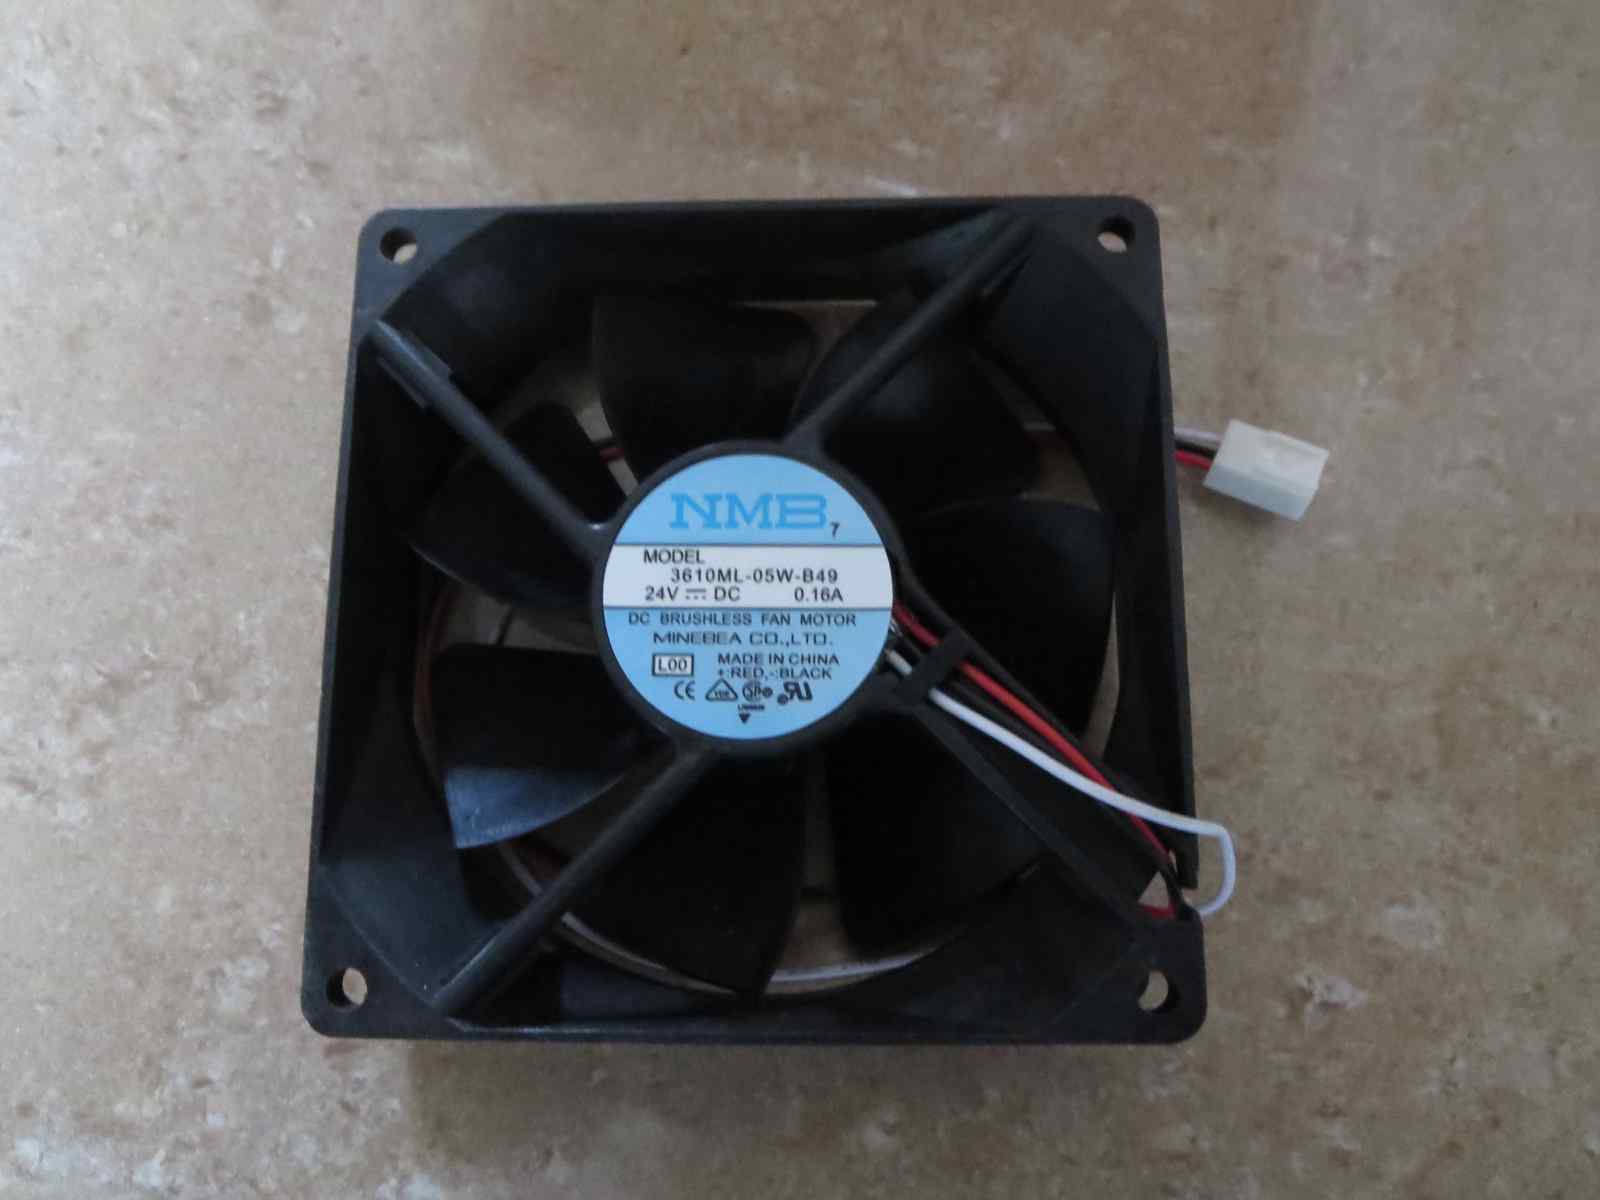  3610ML-05W-B49 NMB cooling fan